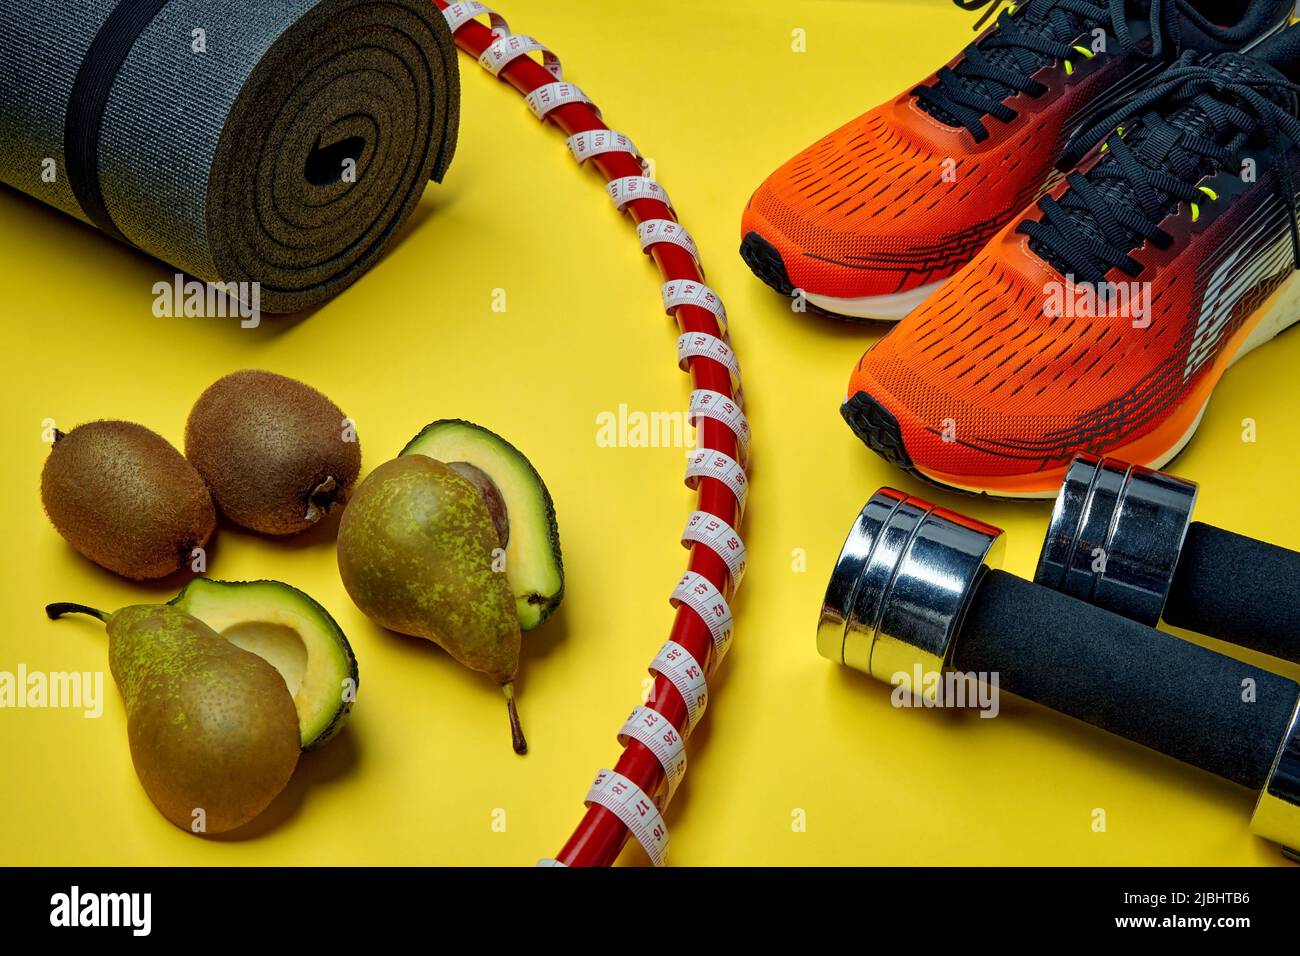 Abnehmen und Gesundheit Bewegung und Ernährung Konzept. Orangefarbene Sportschuhe, Turnring in ein Maßband mit einem Meter eingewickelt, Hanteln, Yoga und Stockfoto